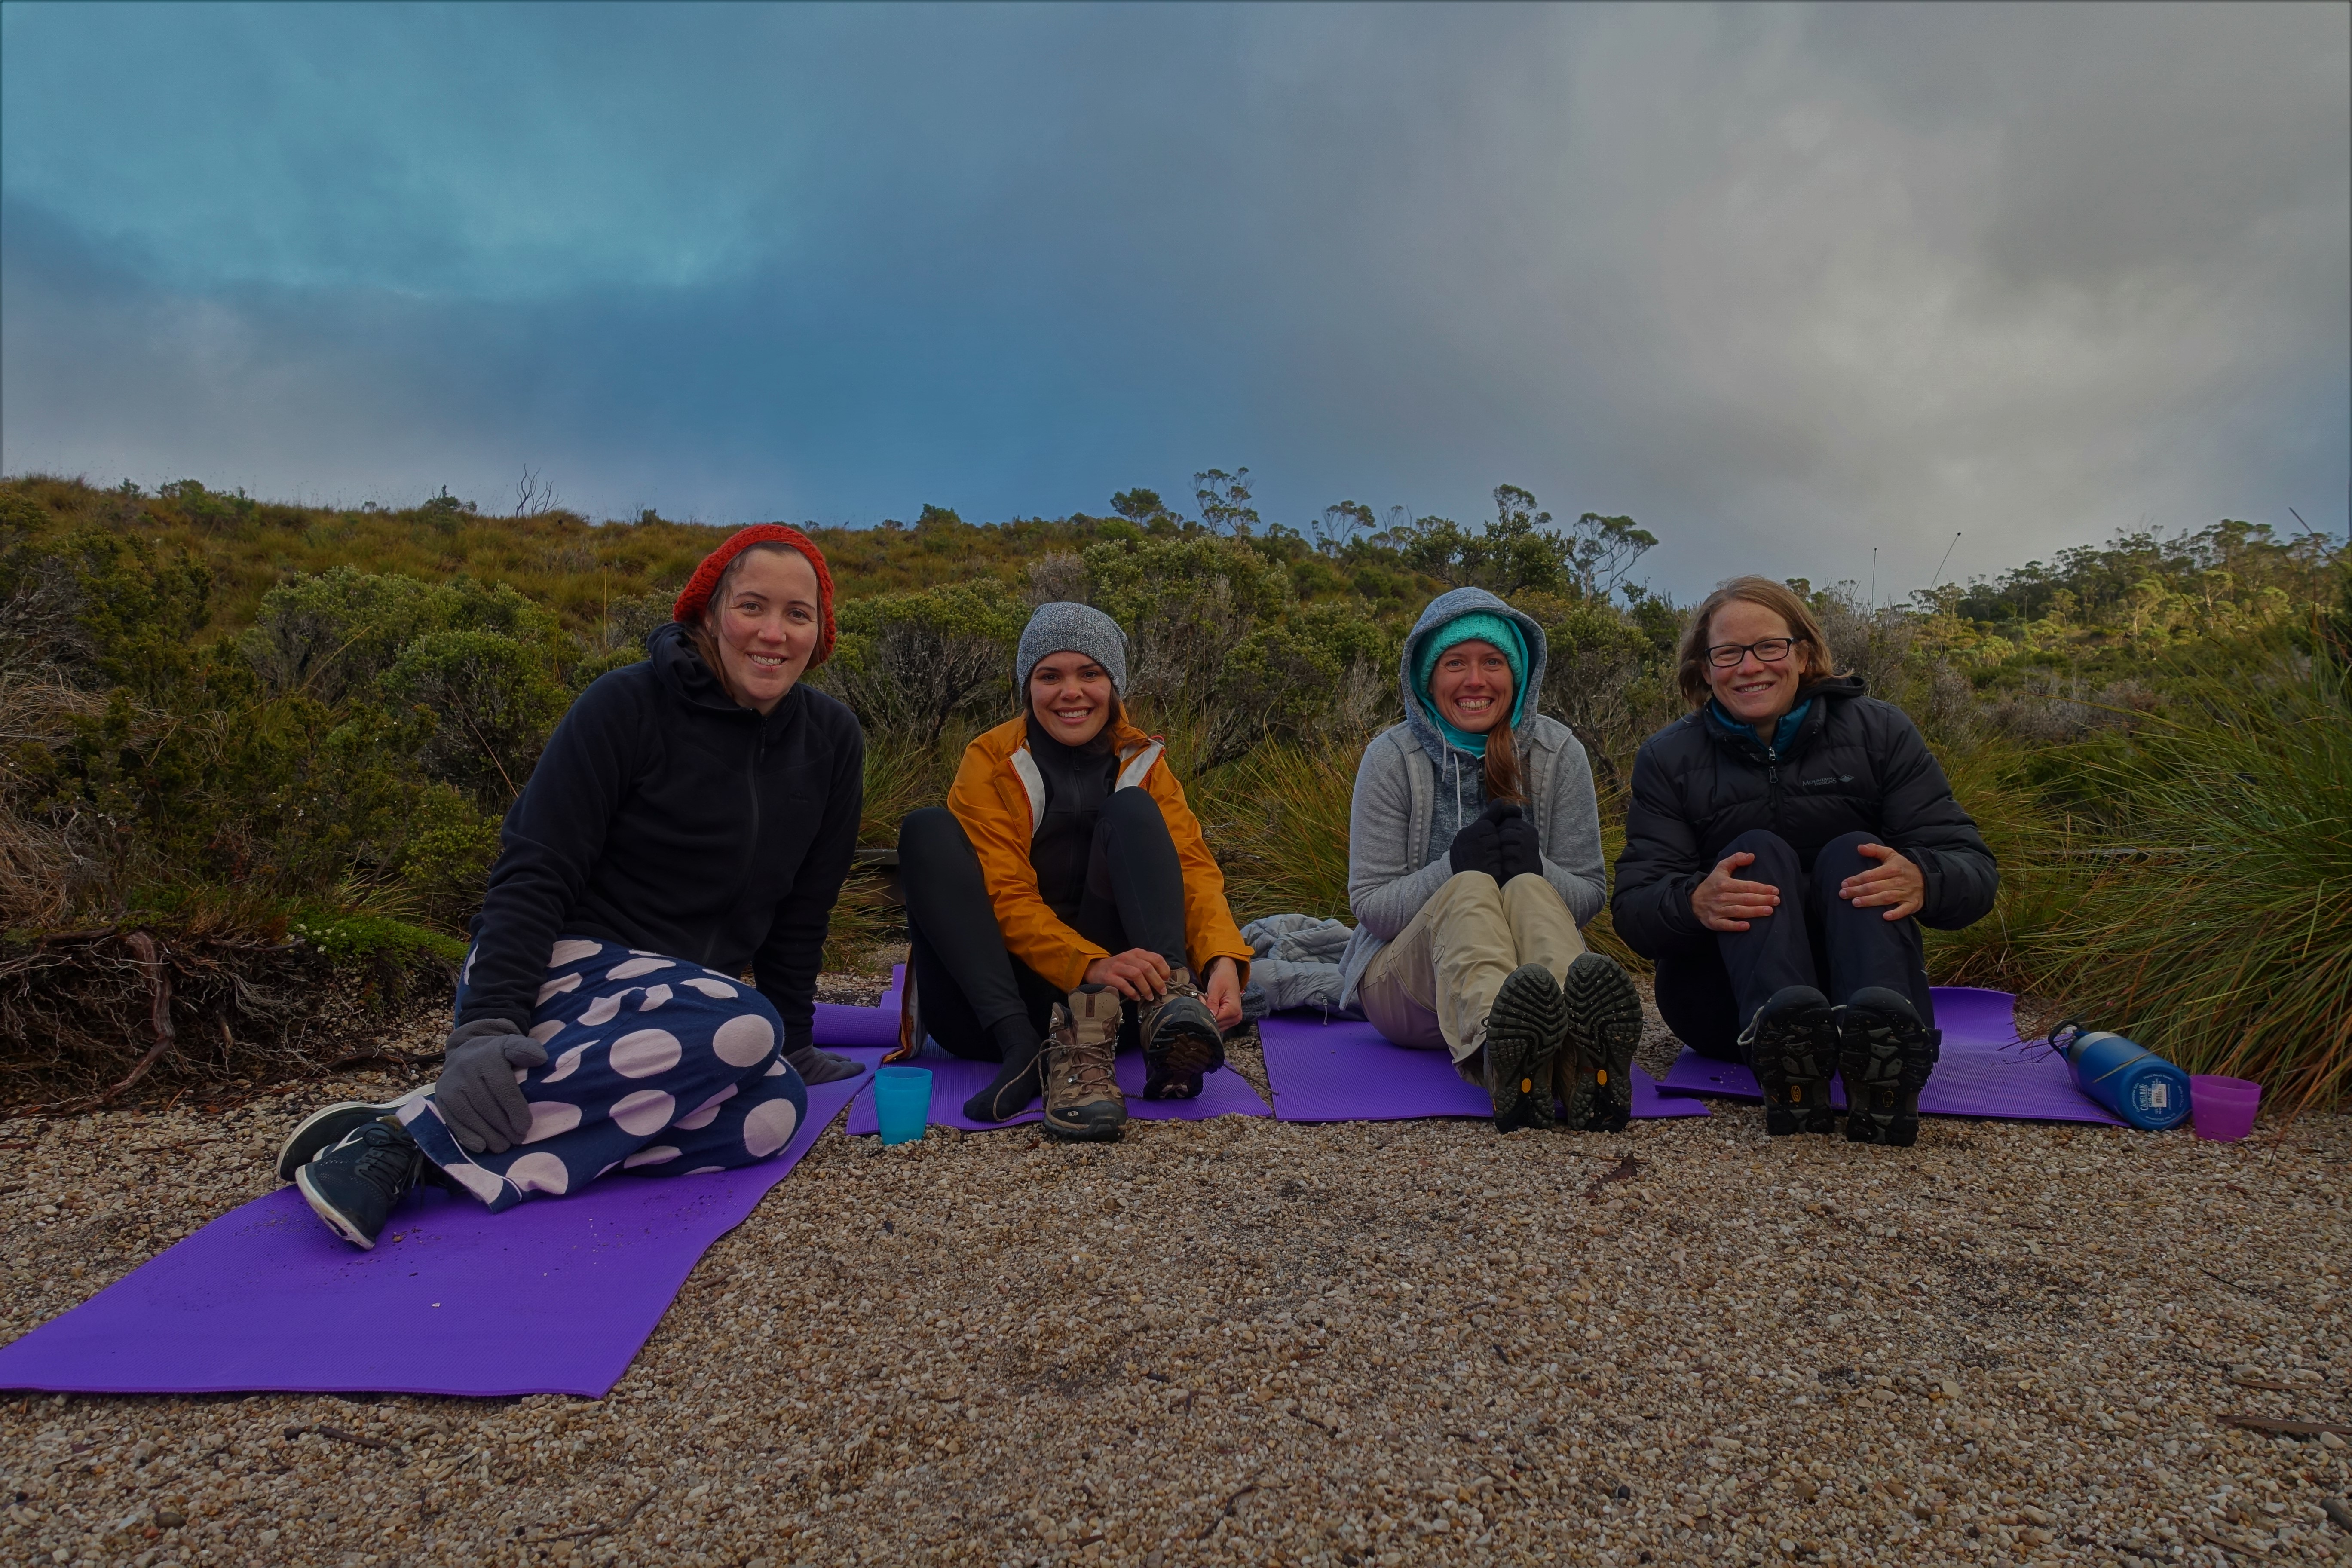 A few more ‘Cradle Mountain Dawn Wilderness Yoga’ photos